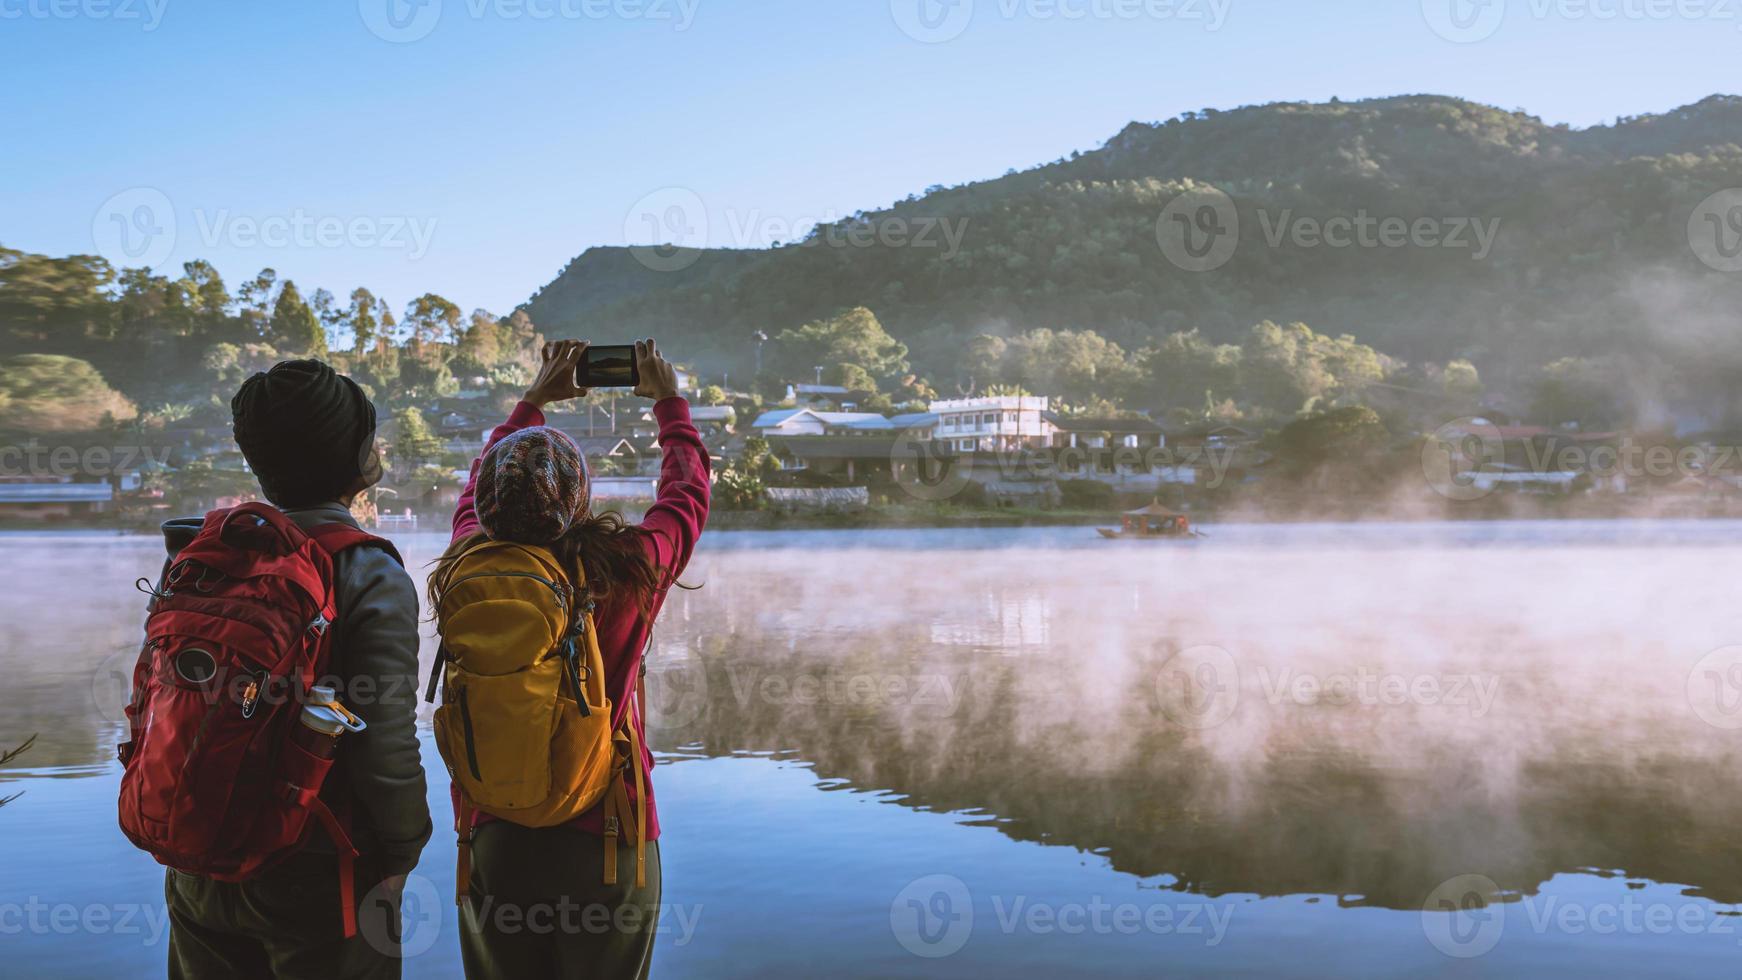 een Aziatisch stel dat 's ochtends staat te kijken naar de opkomende mist op het meer. reisverbod rak thai village, mae hong son in thailand. maak een foto van het meer